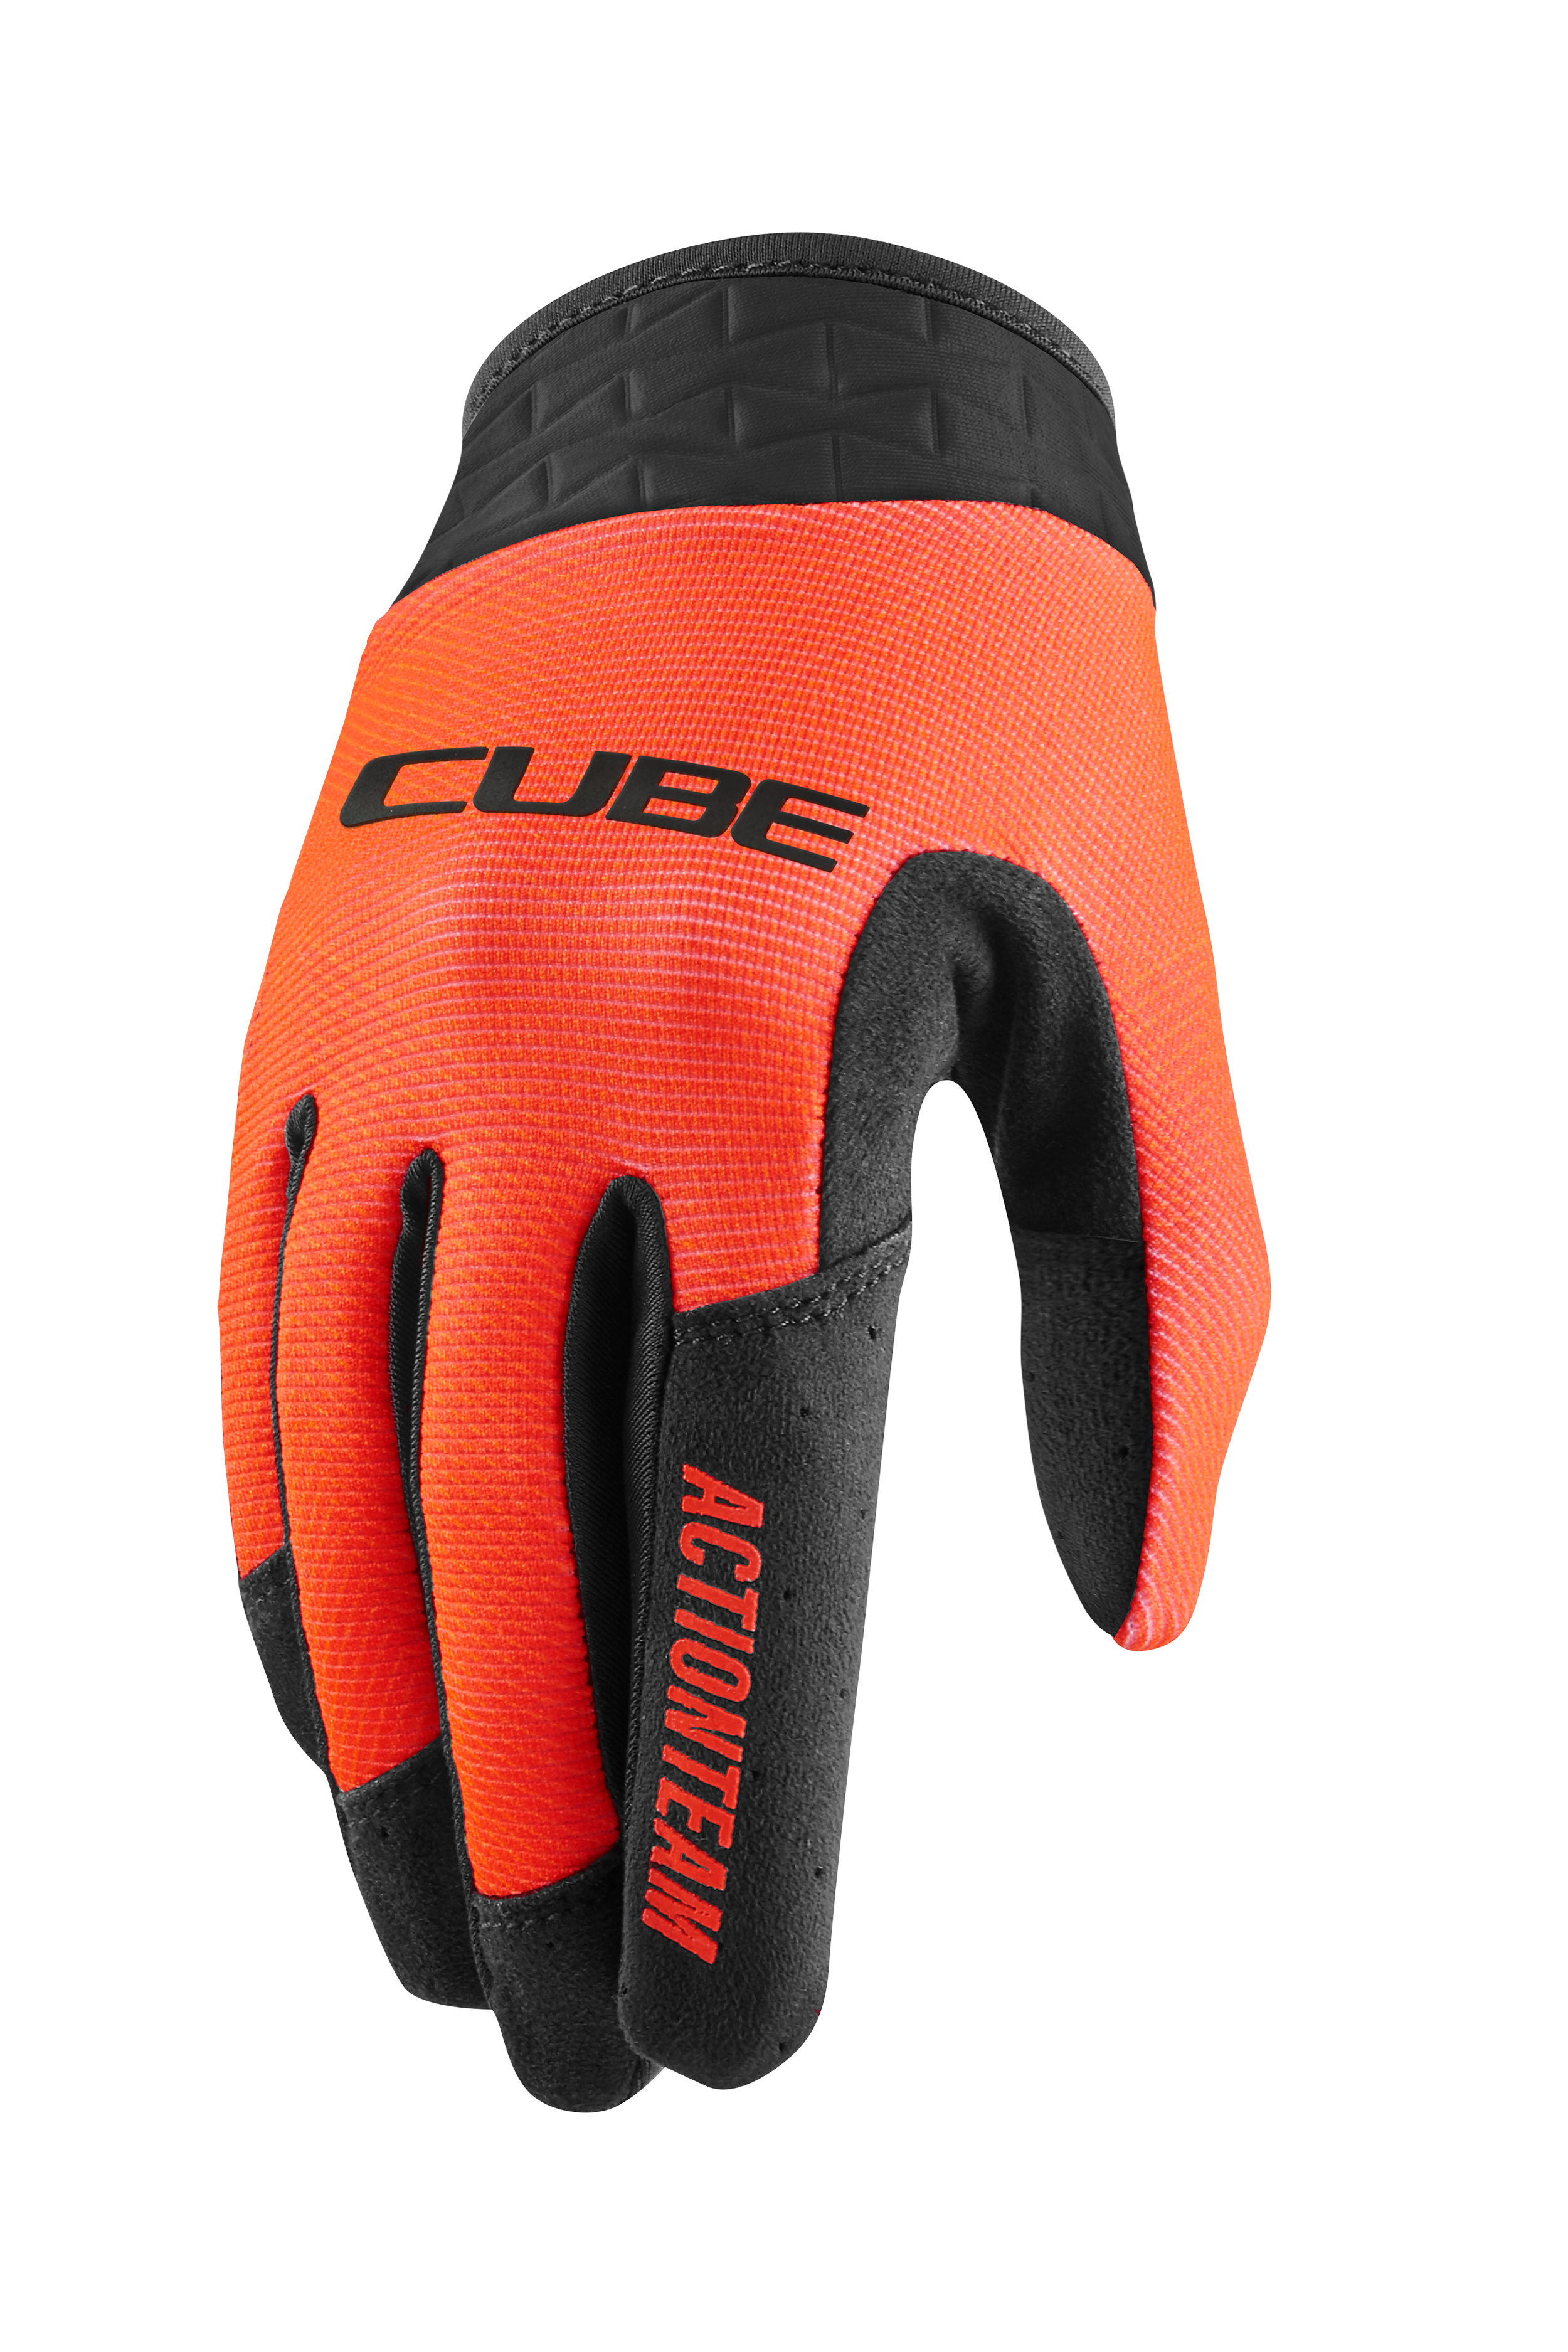 CUBE Gloves Performance Junior long finger X Actionteam